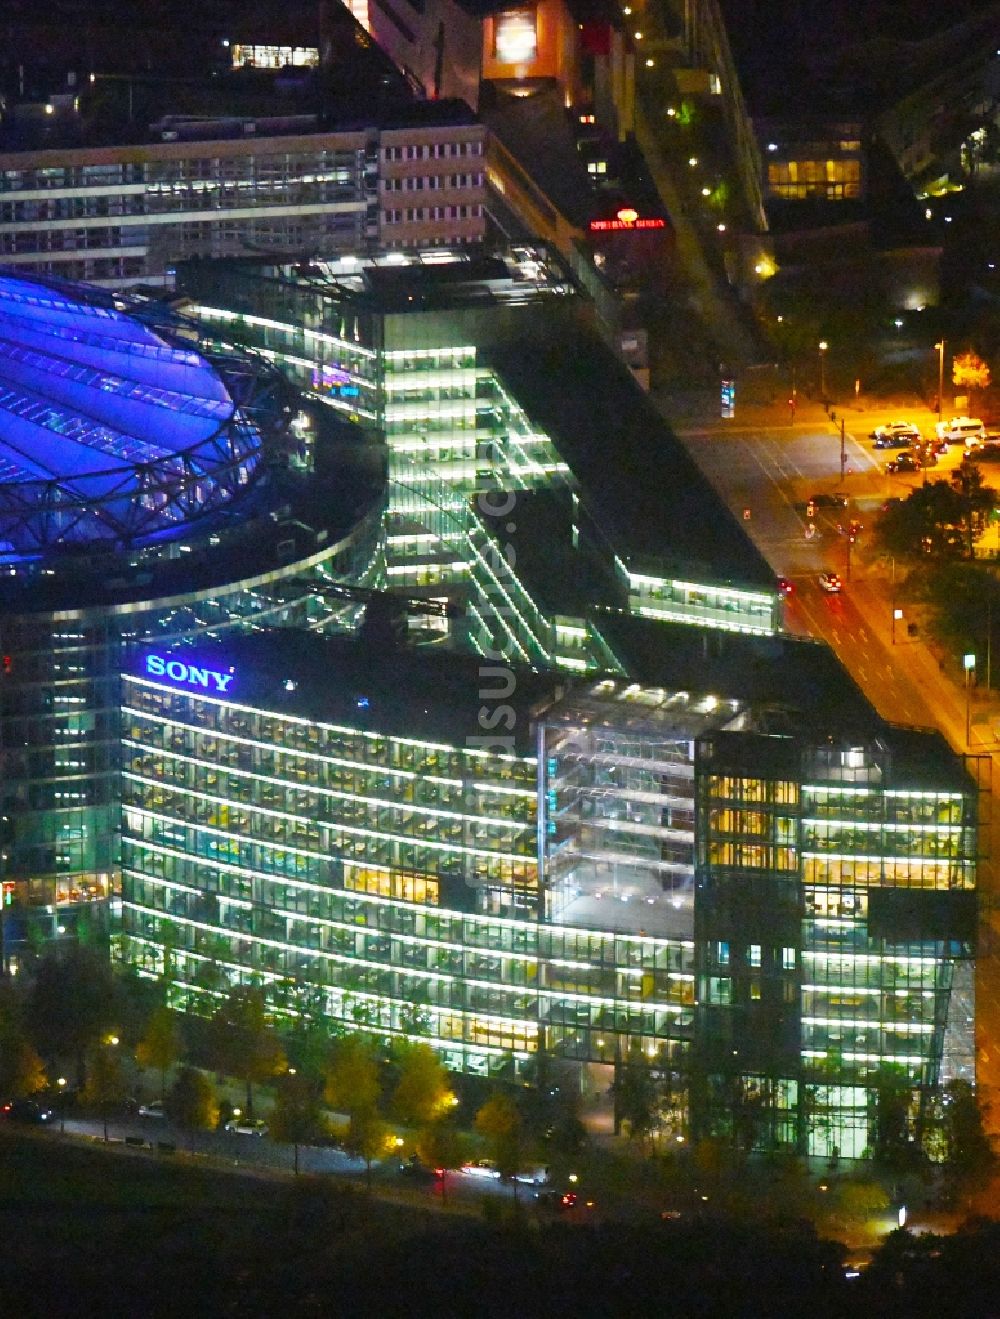 Nacht-Luftaufnahme Berlin - Nachtluftbild Gebäudekomplex mit dem Sony- Center am Potsdamer Platz Berlin